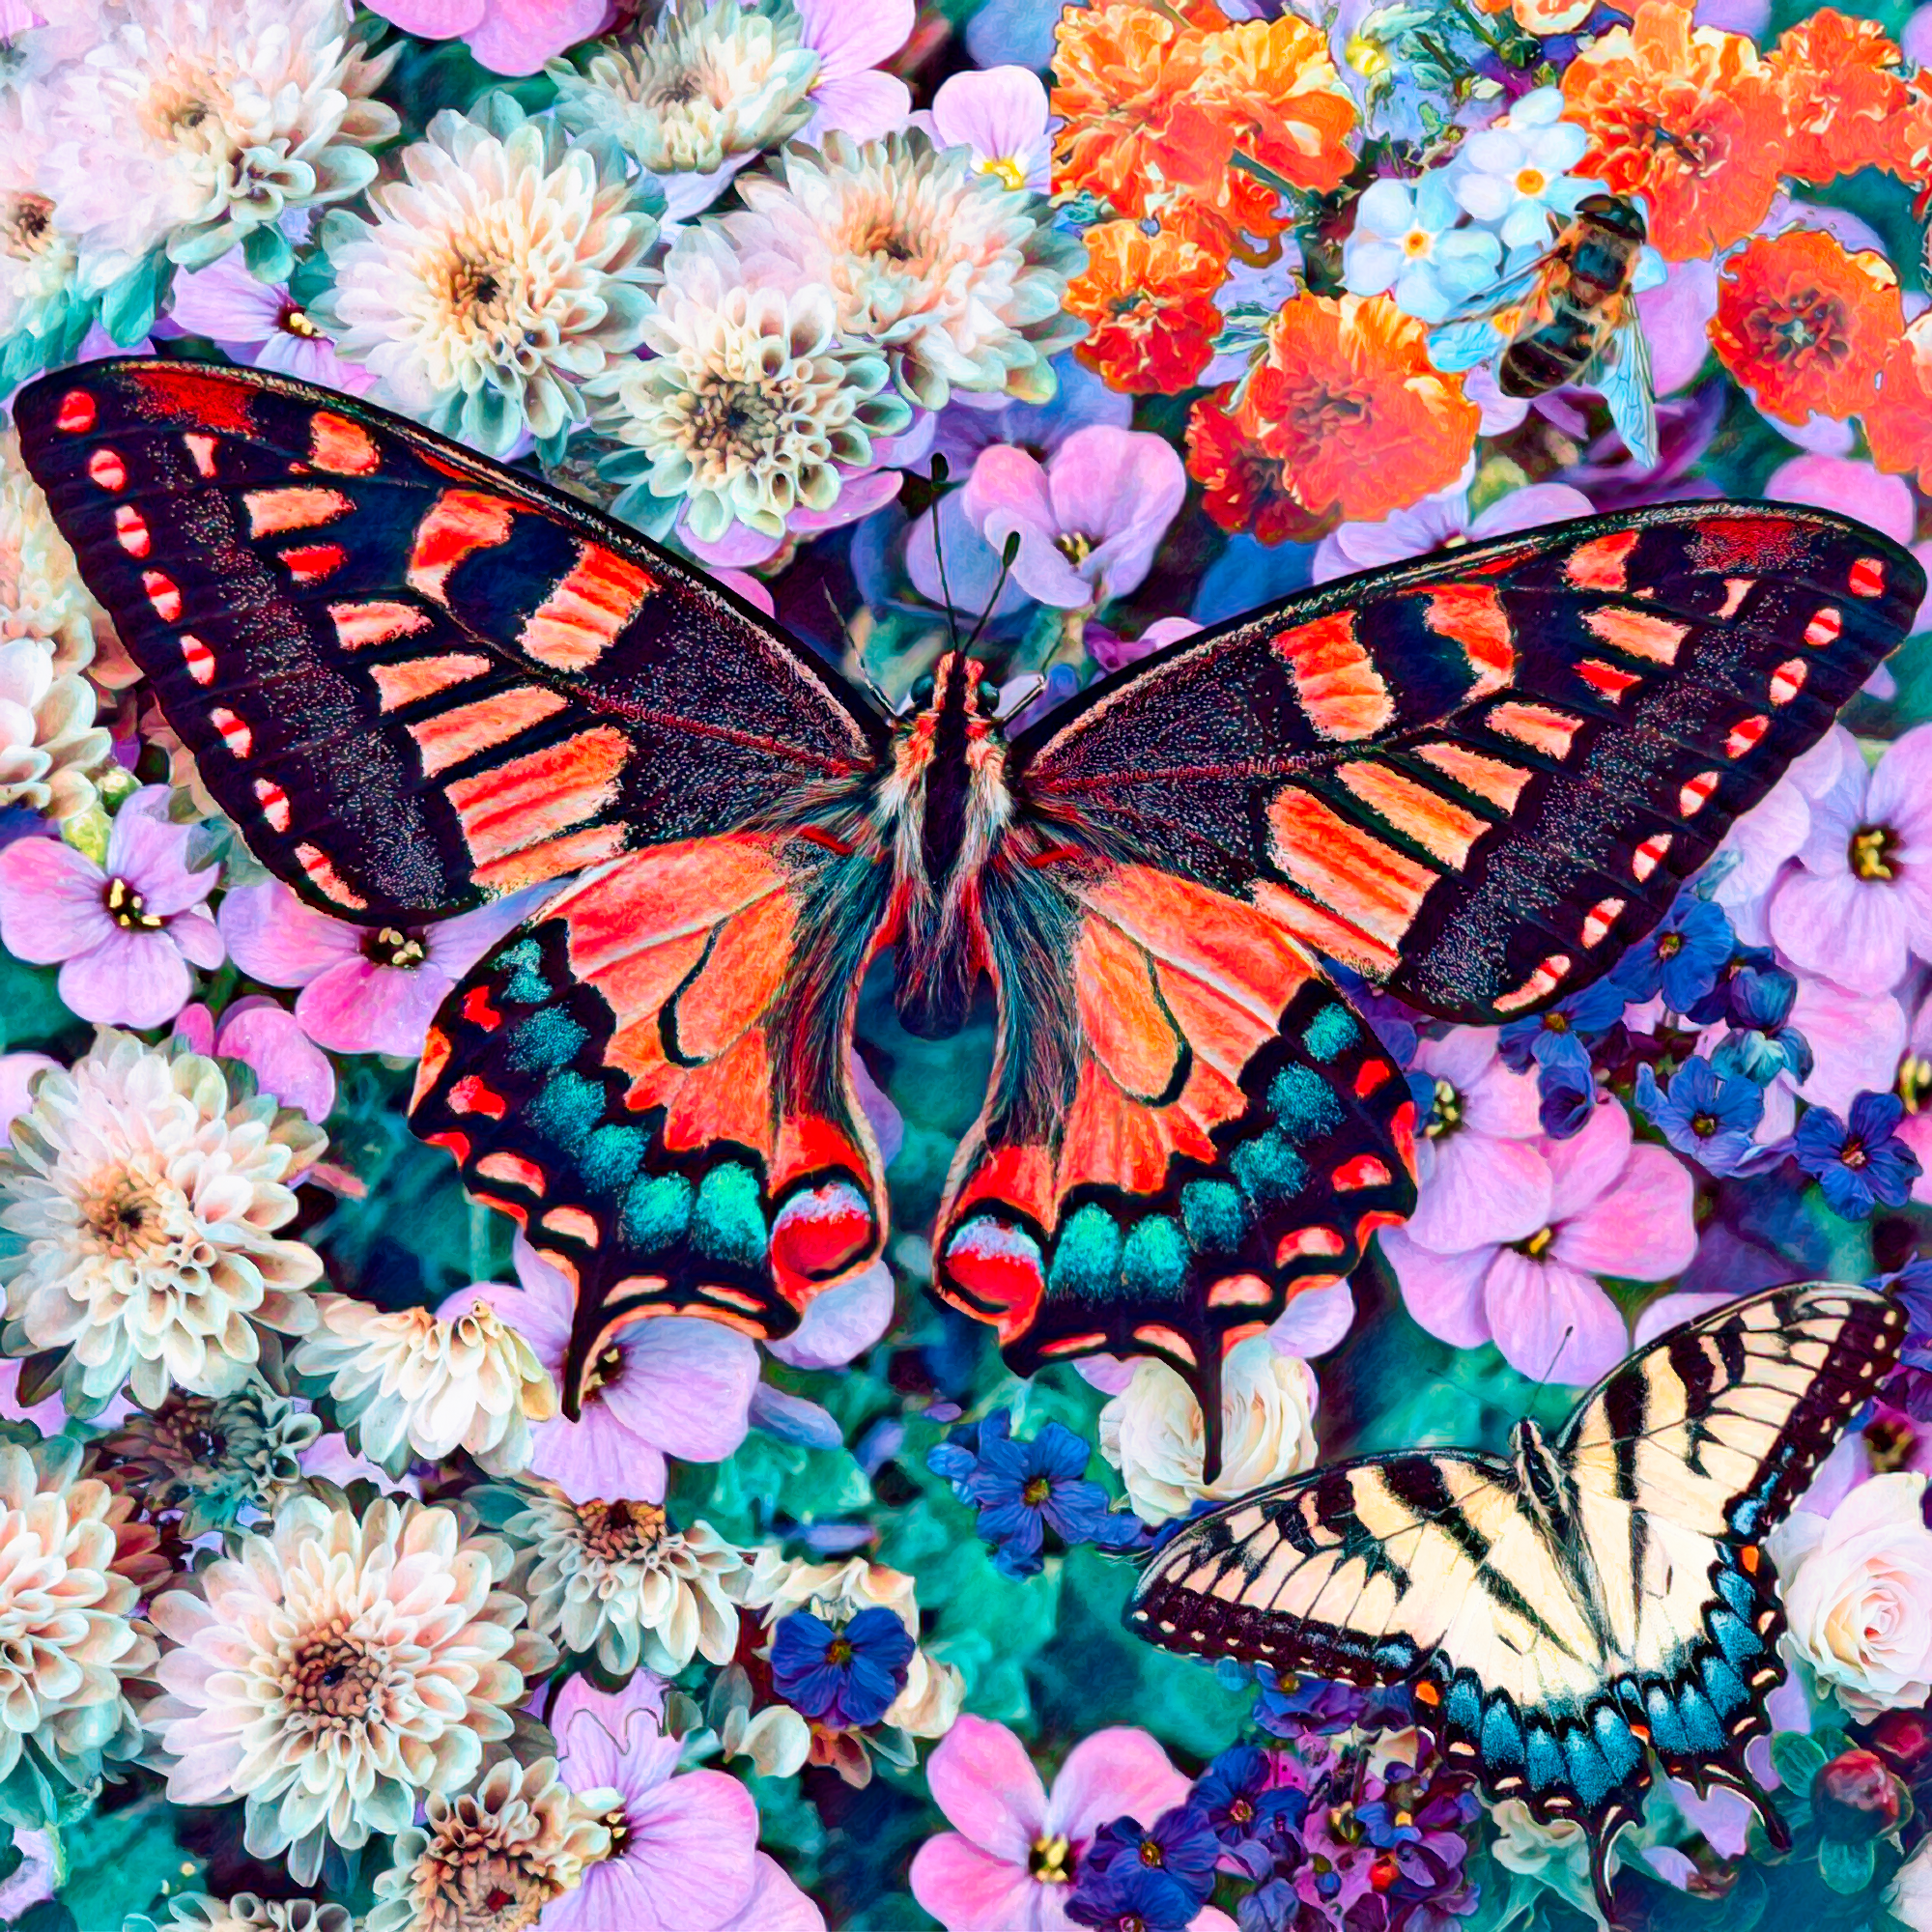 無料壁紙 背景画像素材 花々 スミレの上を飛ぶ蝶のイラスト Free Illustlation くりえいてぃぶ